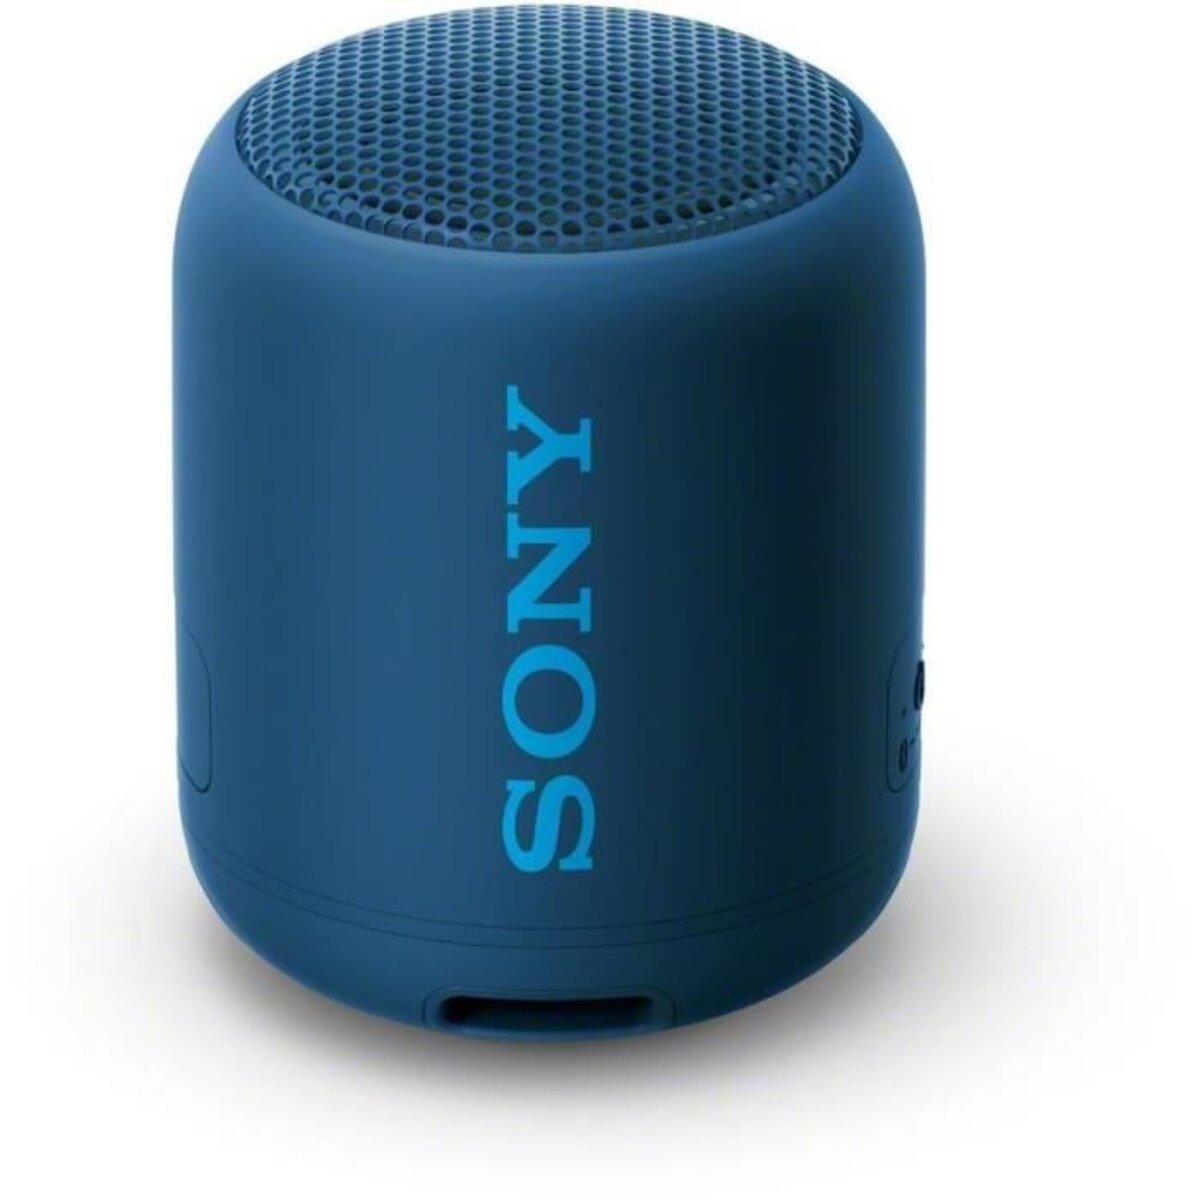 Sony srsxb01l.ce7 enceinte bluetooth entry wireless - bleu - La Poste